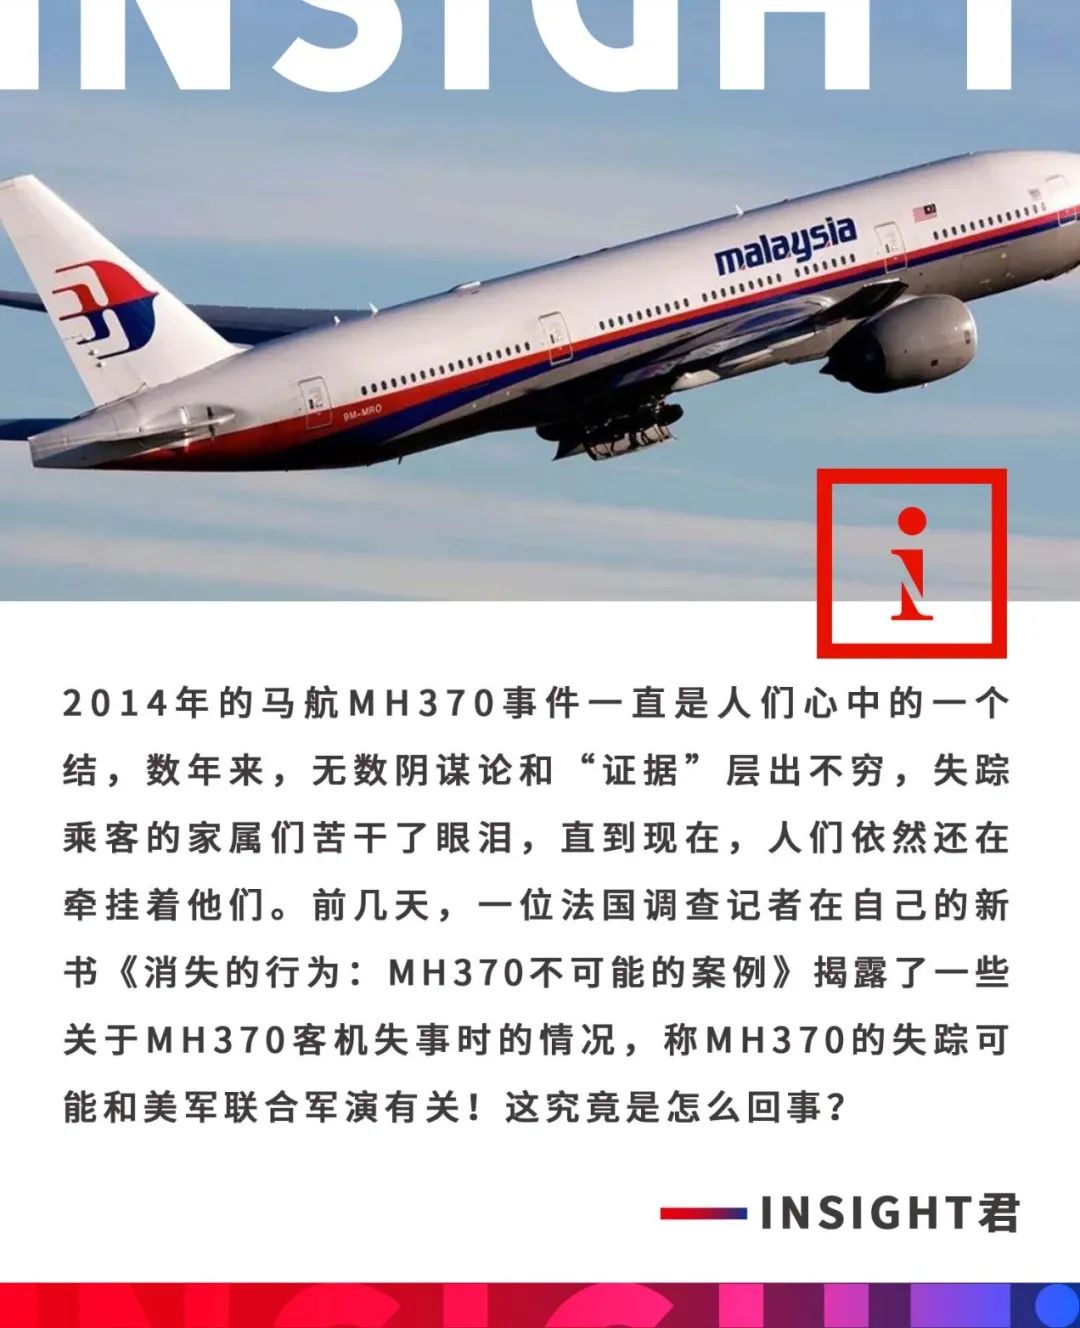 机长Zaharie Ahmad Shah最新调查!马航MH370乘客坠海前皆已死亡[23P]|无奇不有 - 武当休闲山庄 - 稳定,和谐,人性 ...